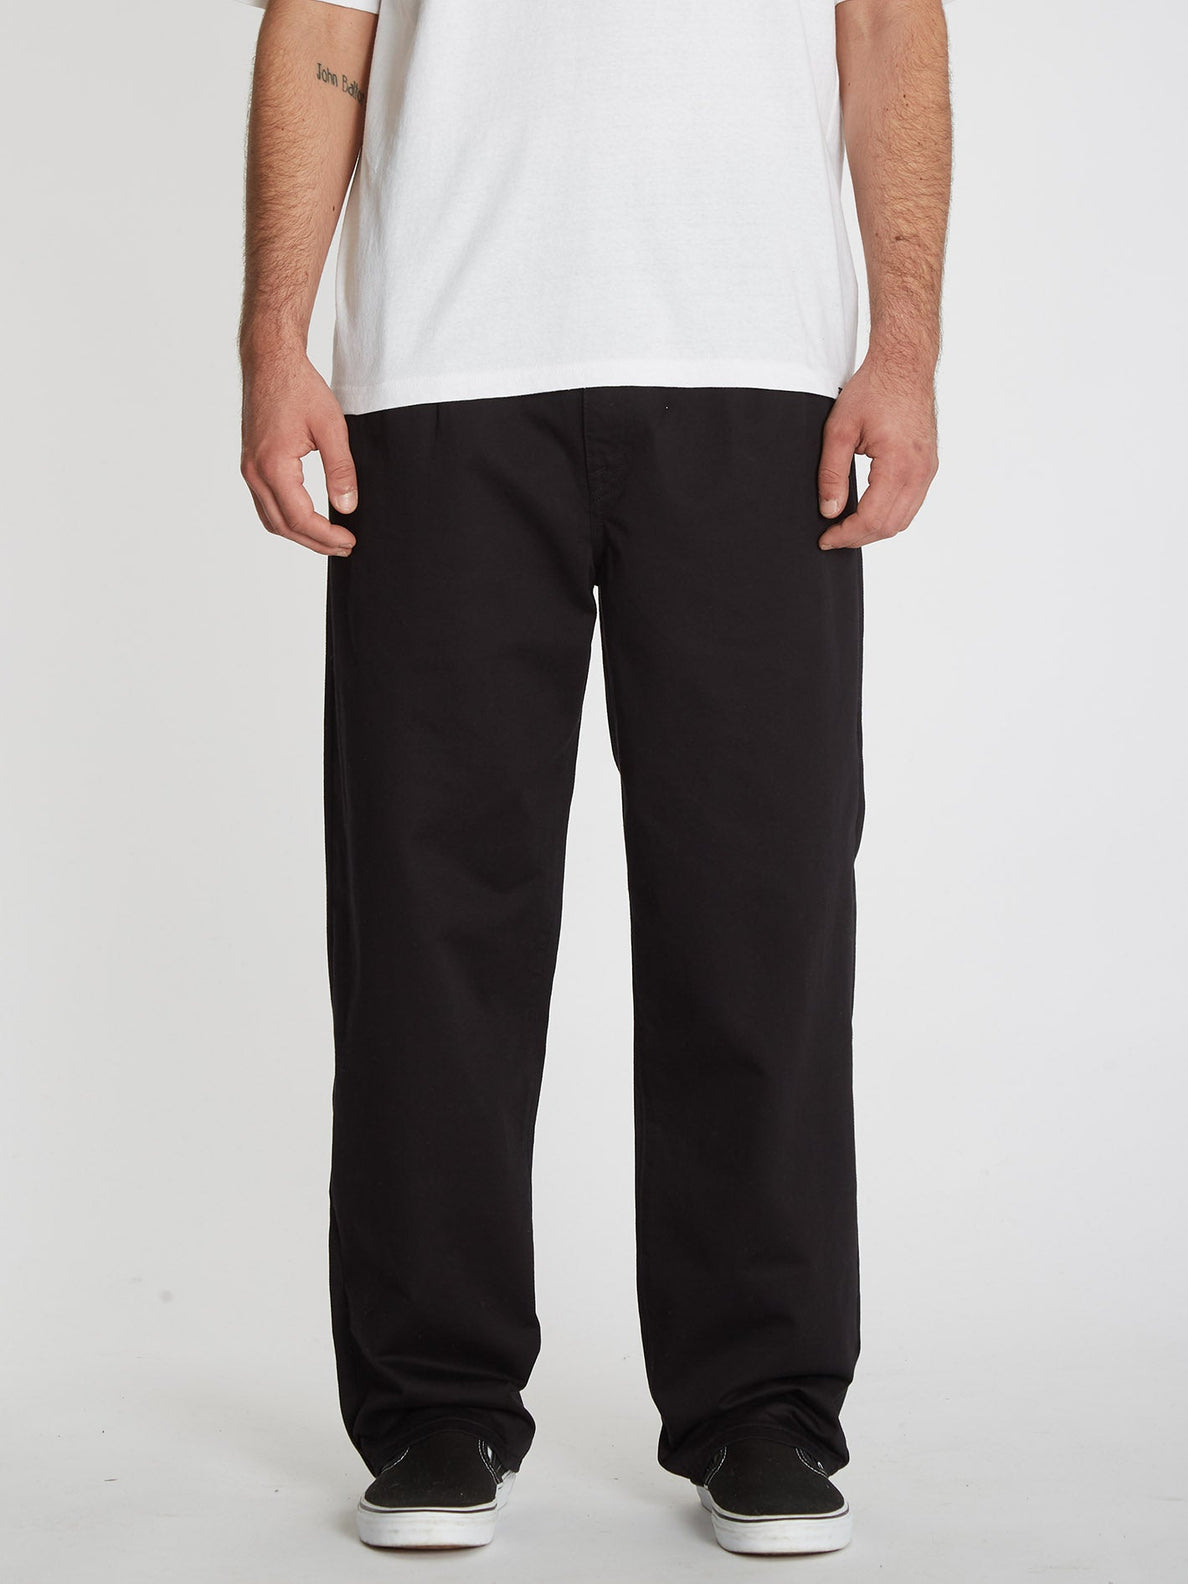 Greenfuzz Trousers - BLACK (A1132202_BLK) [F]